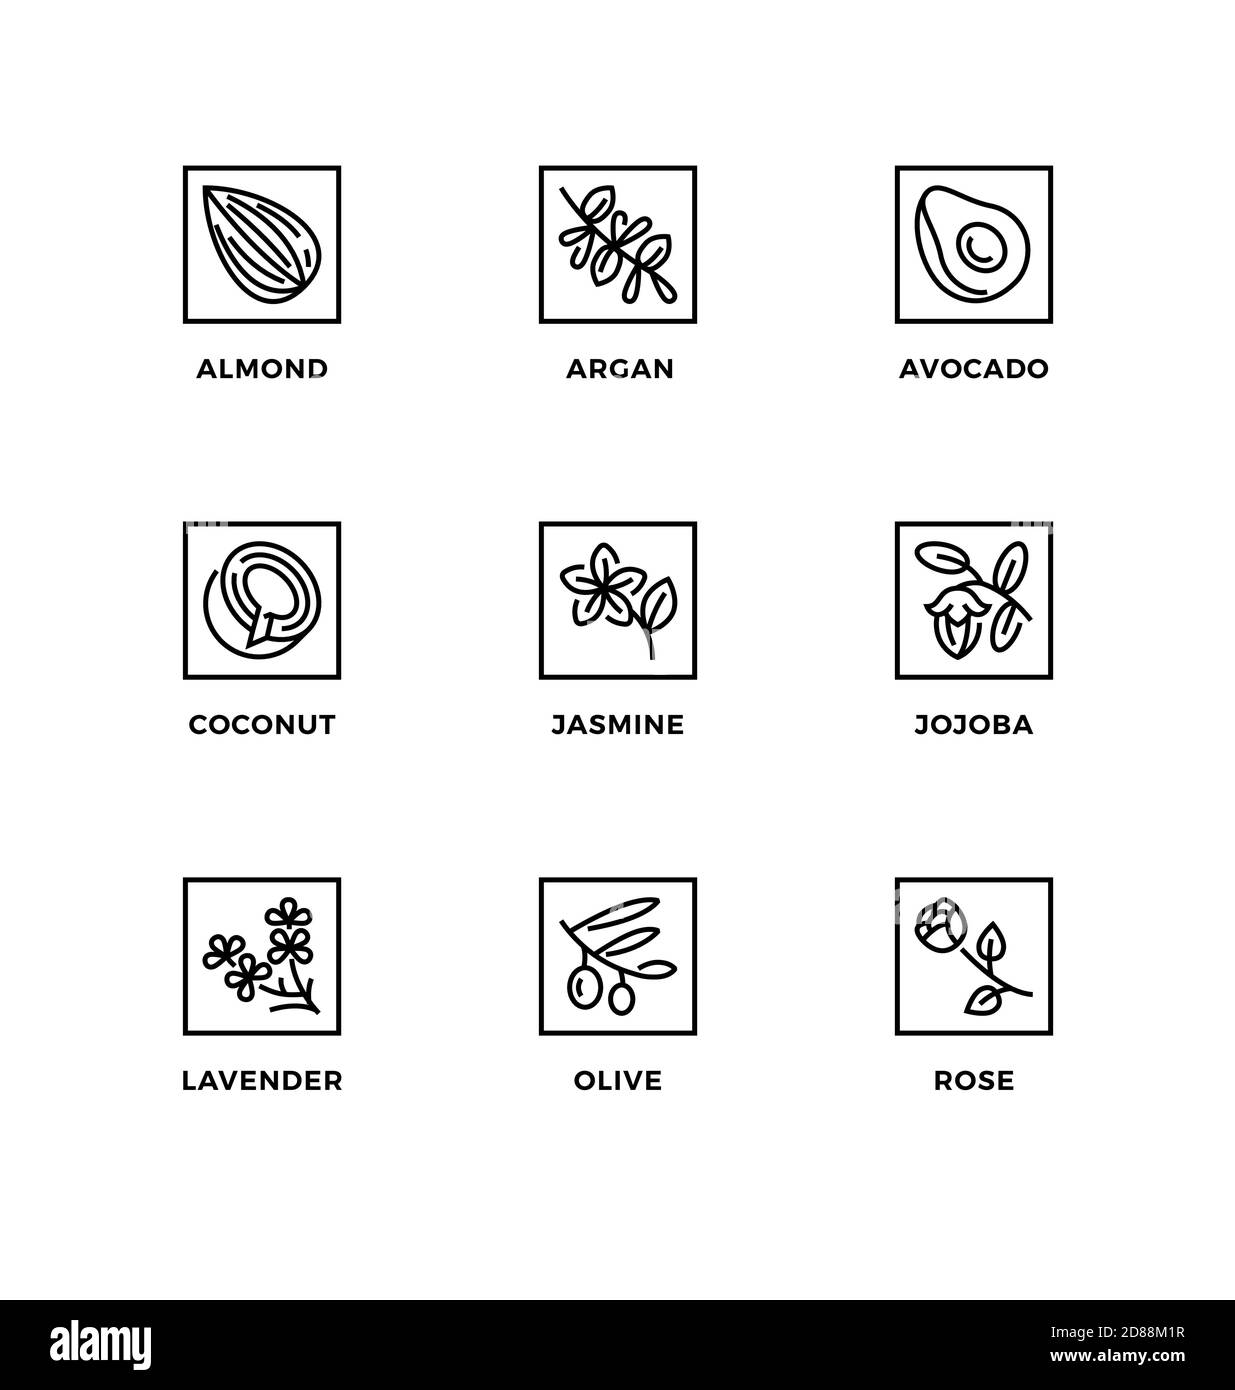 Vektor-Set von Design-Elementen, Logo-Design-Vorlage, Symbole und Abzeichen für gesunde Speiseöle zum Kochen oder für Biokosmetik. Liniensymbole eingestellt, editierbar Stock Vektor